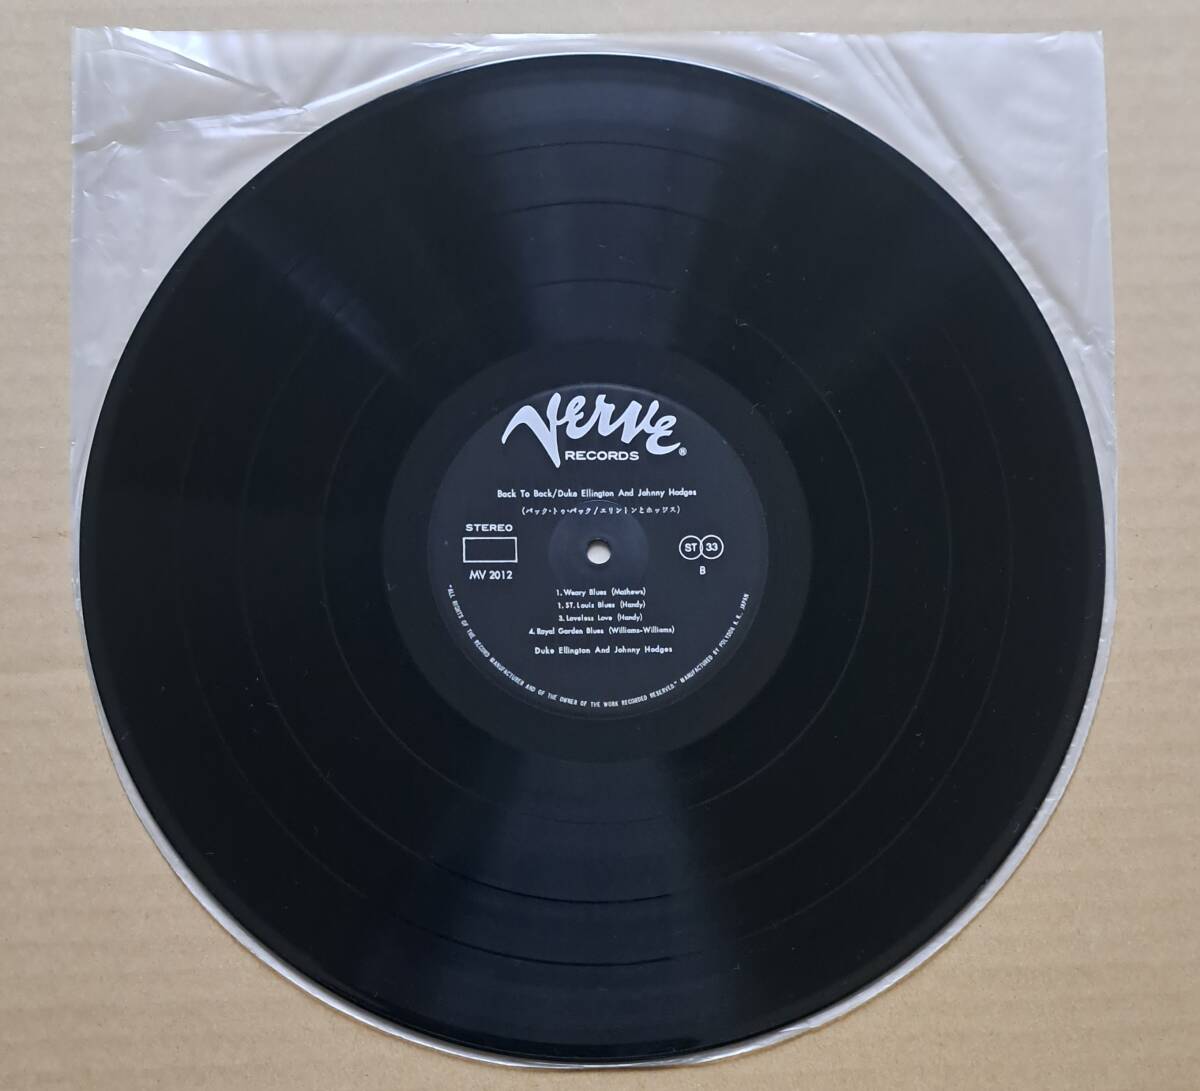 帯付良盤LP◎エリントンとホッジス『バック・トゥ・バック』MV2012 ヴァーヴレコード ポリドール Duke Ellington & Johnny Hodges 64891J_画像5